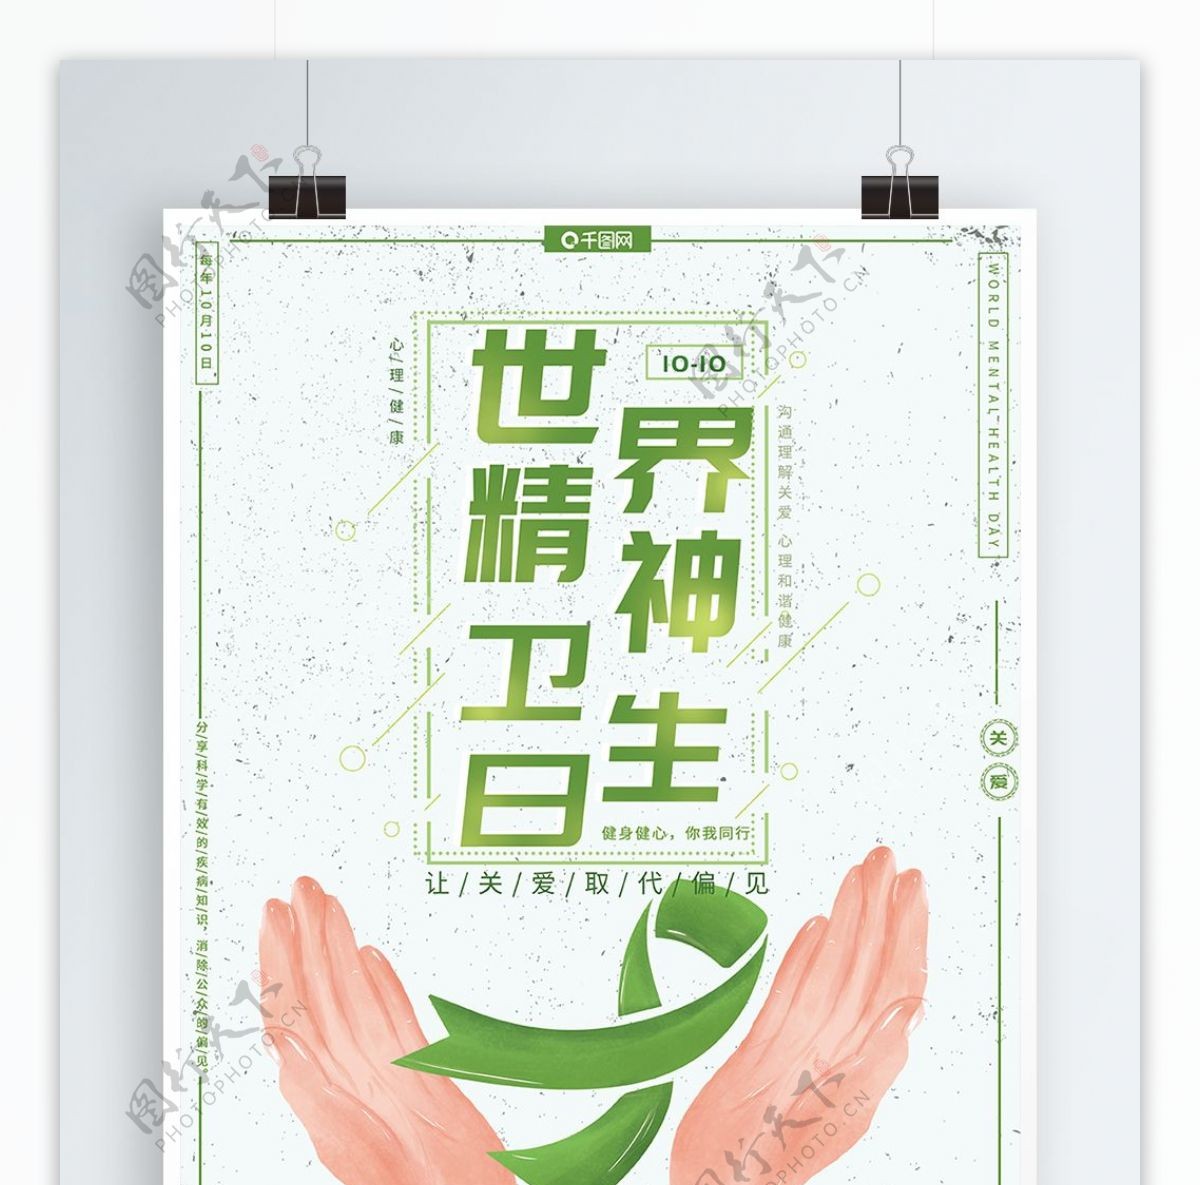 原创手绘小清新绿色世界精神卫生日节日海报